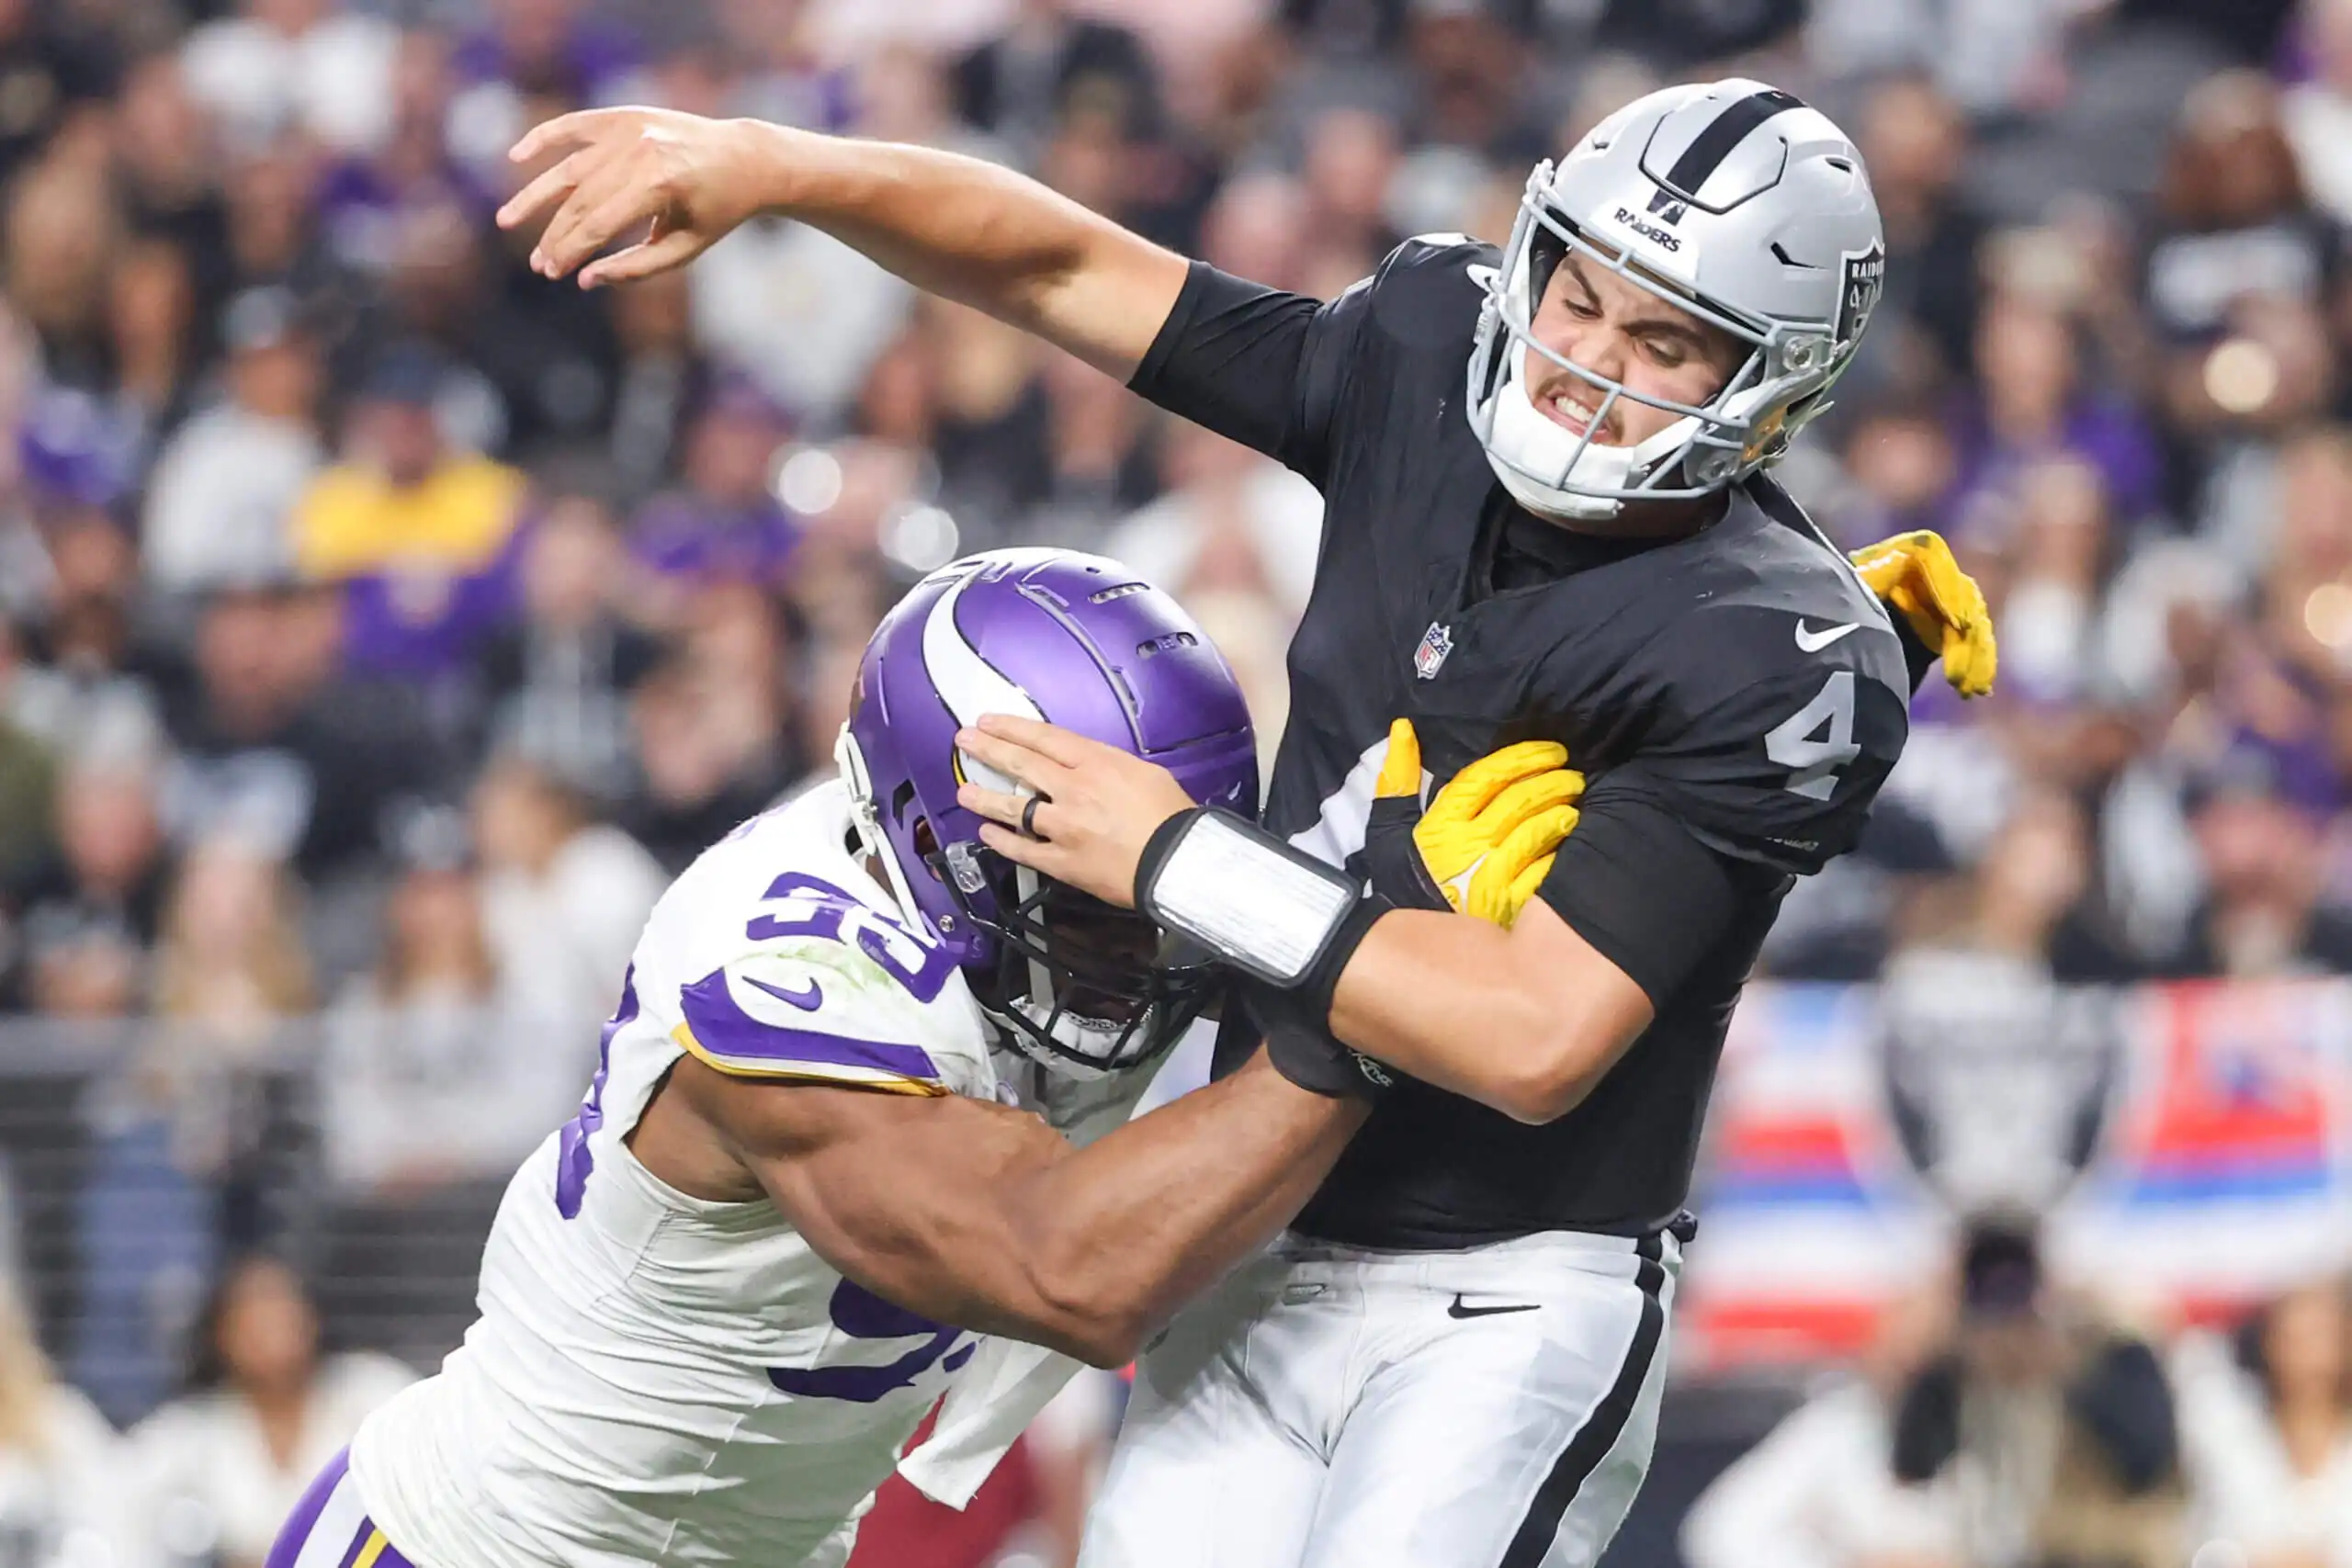 Cambios en la ofensiva de los Raiders, derrota en casa, Vikings